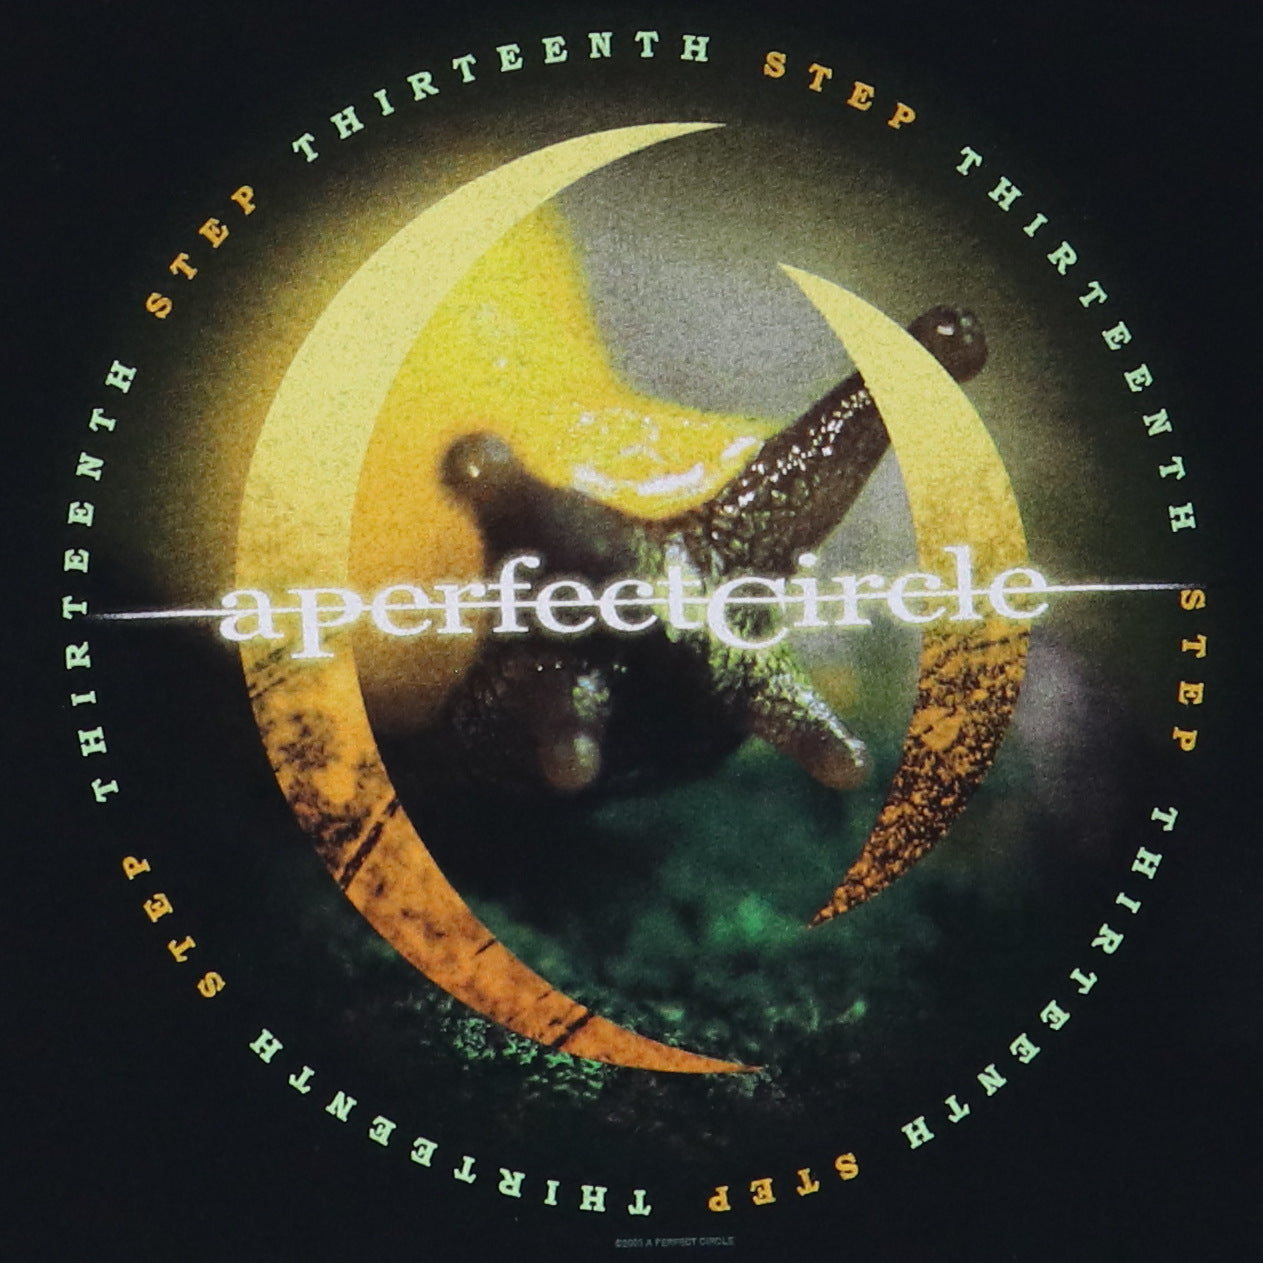 2003 A Perfect Circle Tour Shirt